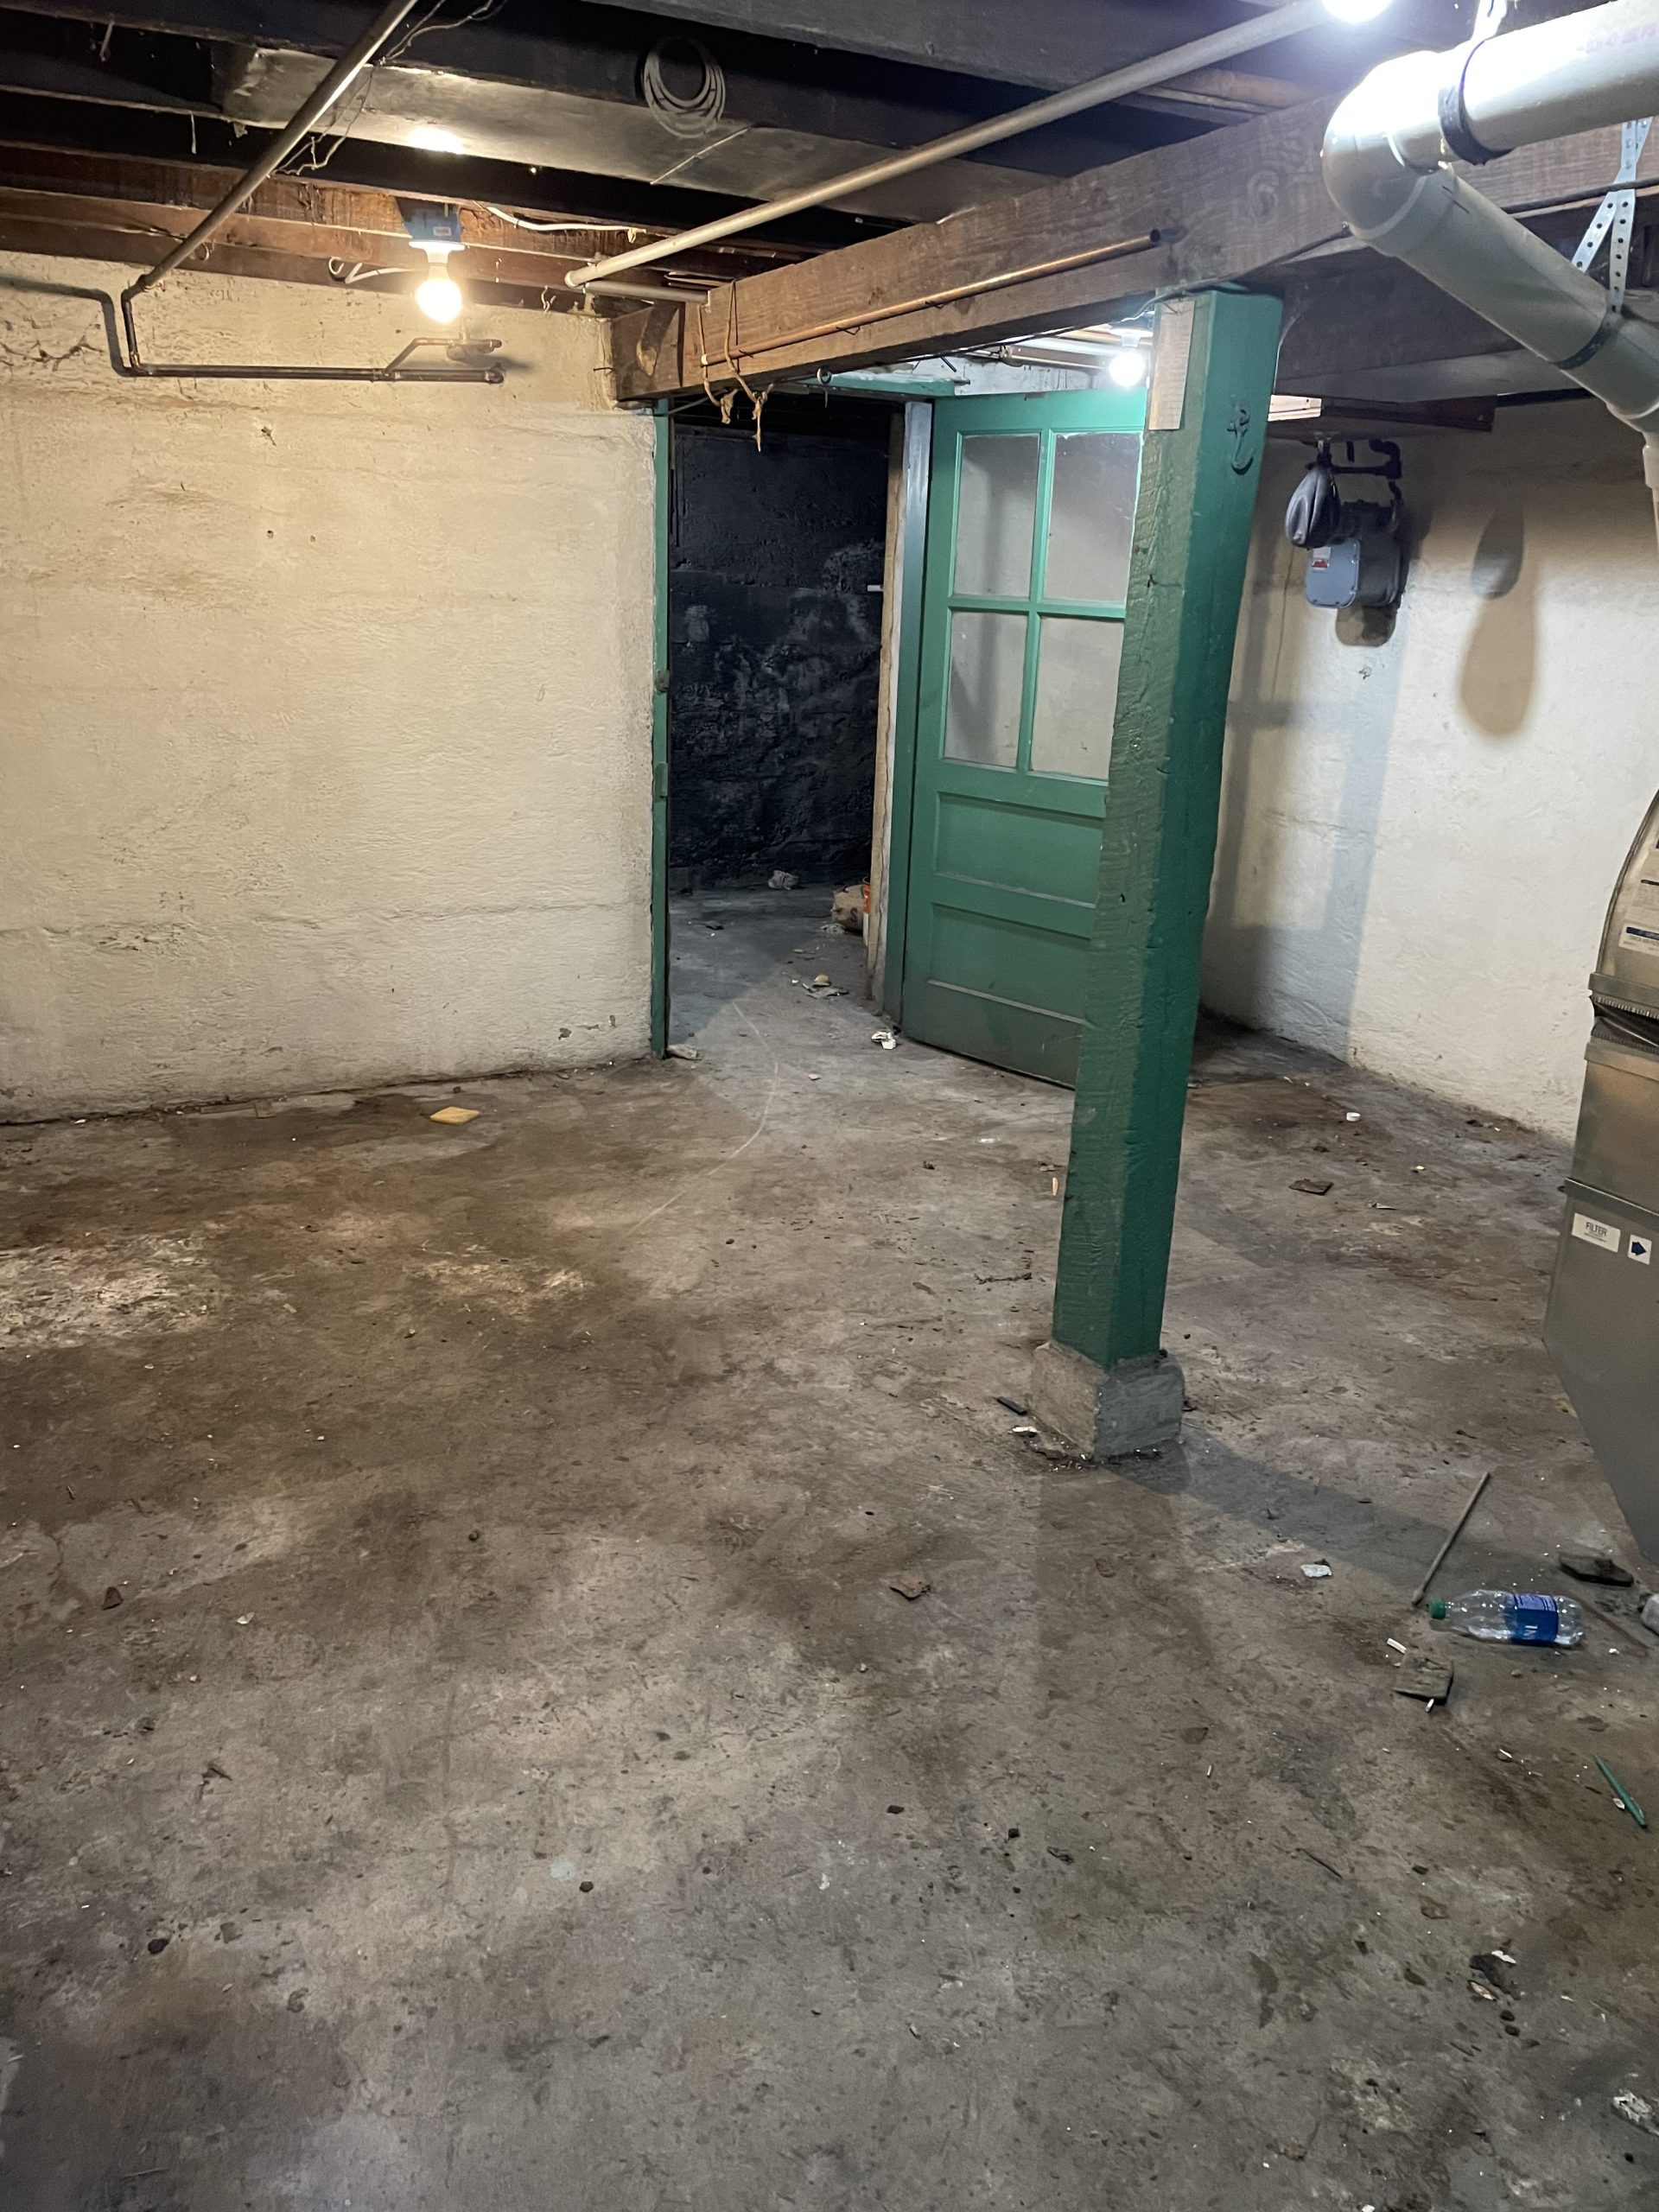 basement room with open door